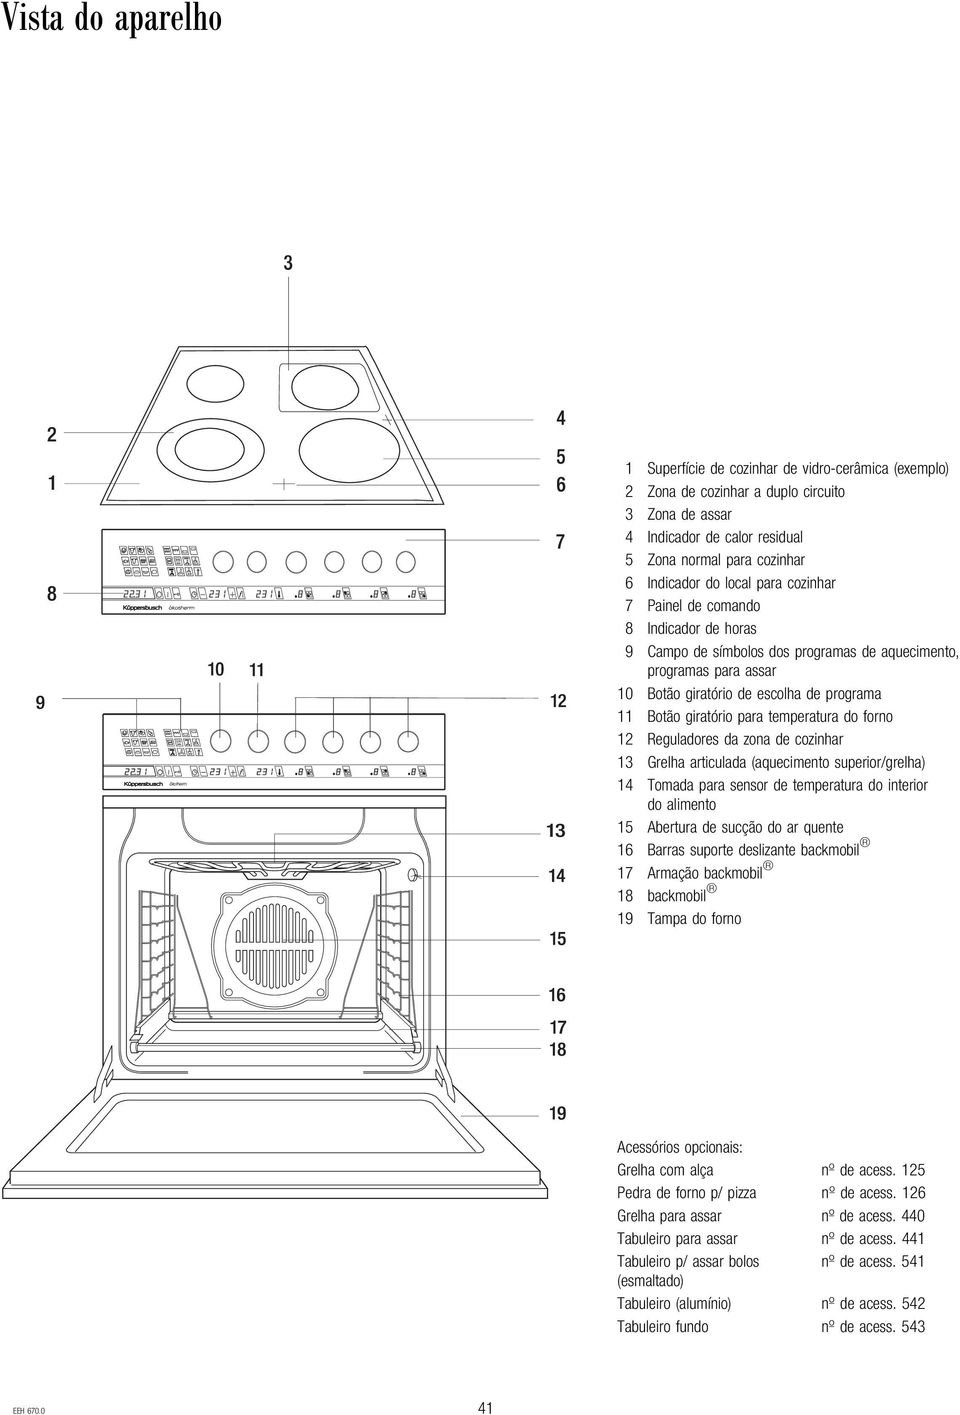 temperatura do forno 12 Reguladores da zona de cozinhar 13 Grelha articulada (aquecimento superior/grelha) 14 Tomada para sensor de temperatura do interior do alimento 15 Abertura de sucção do ar